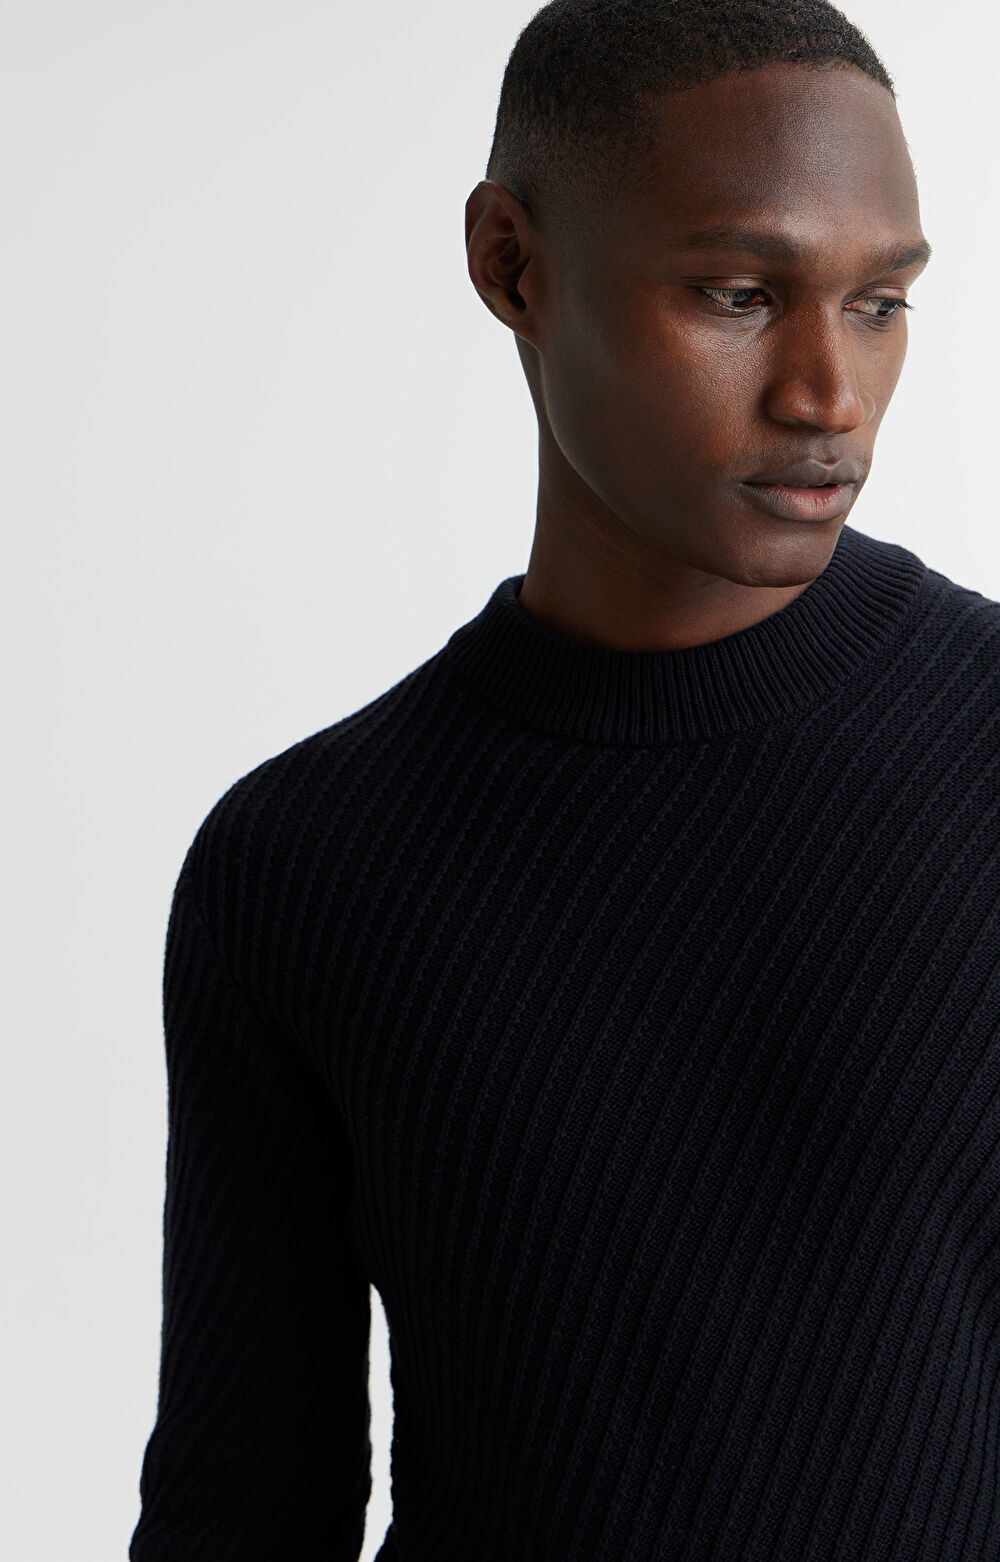 Bawełniany sweter ze strukturalnym wzorem